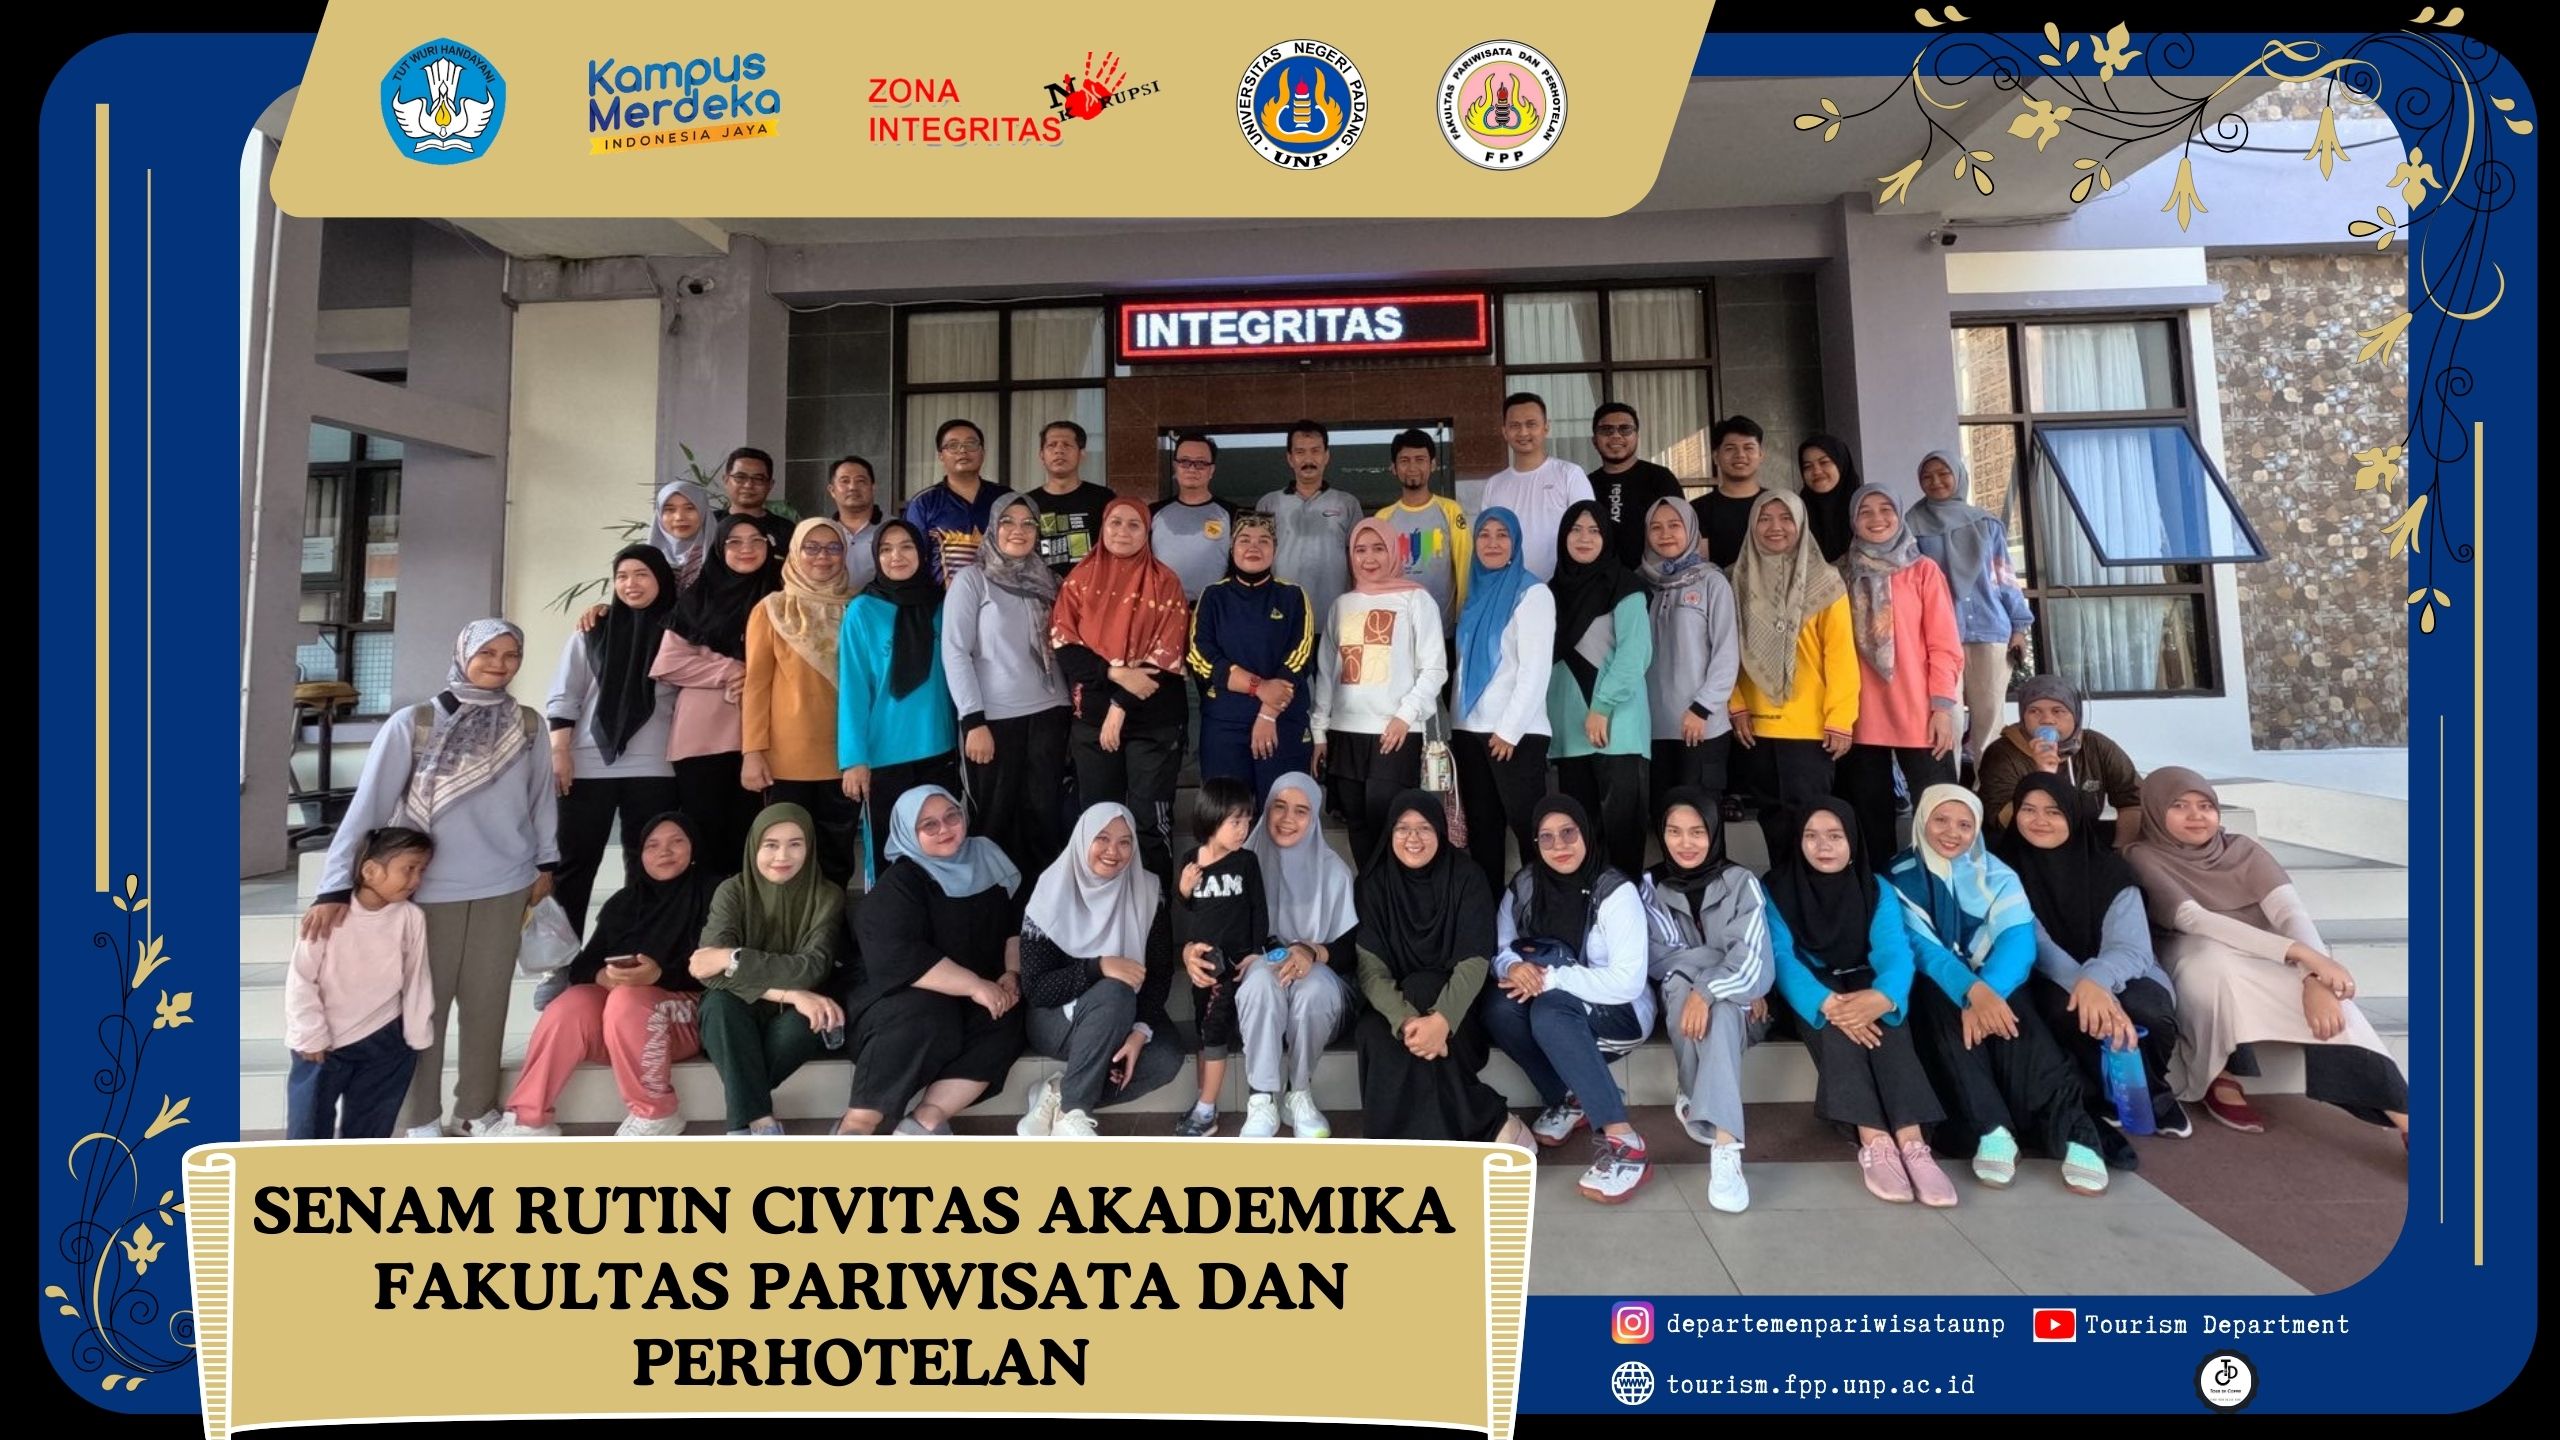 Senam Rutin Civitas Akademika Fakultas Pariwisata dan Perhotelan